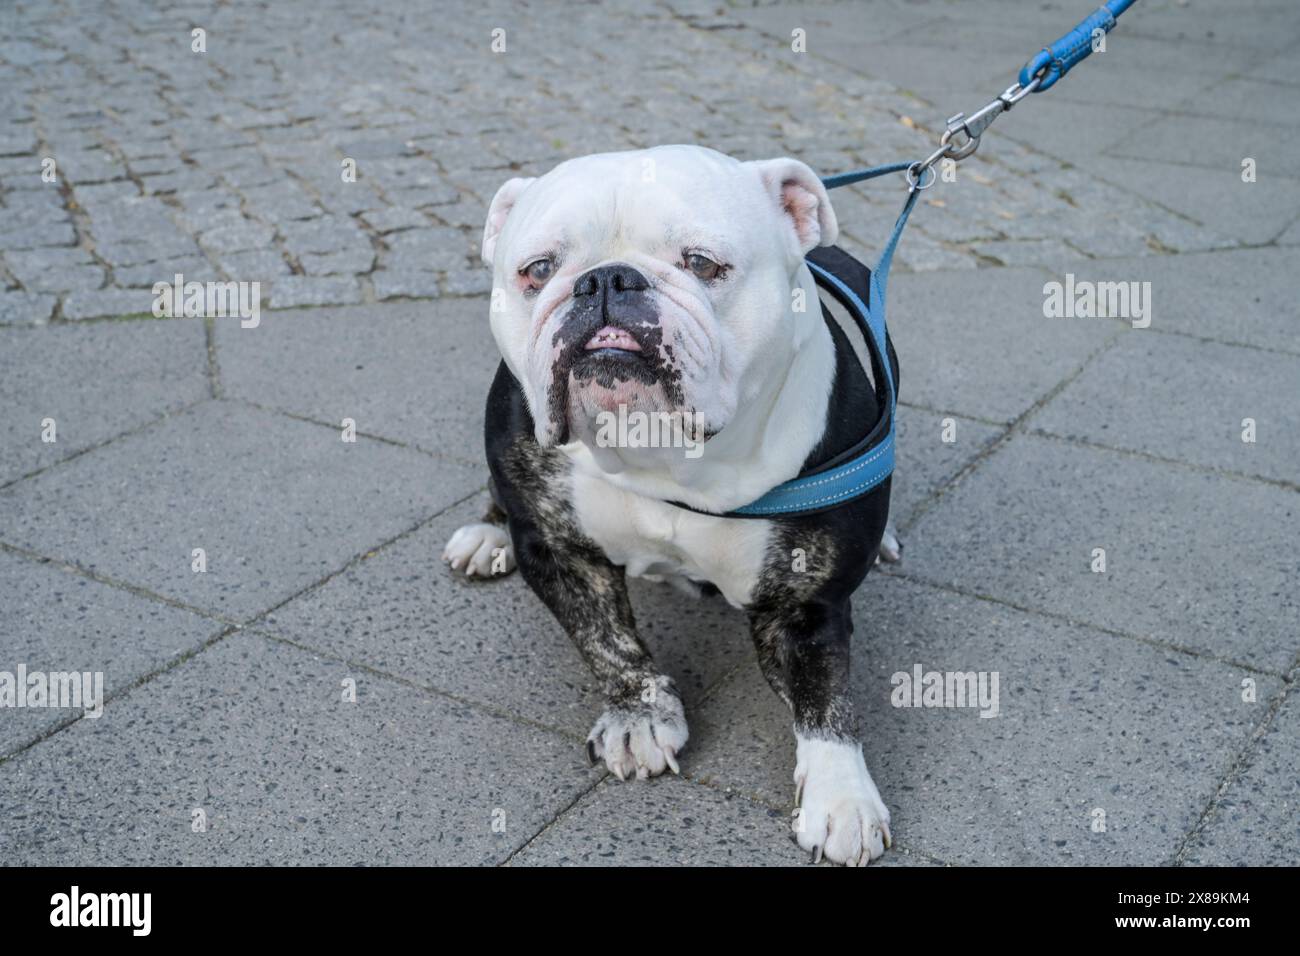 Alter Hund, englische Bulldogge, Berlin, Deutschland Foto Stock